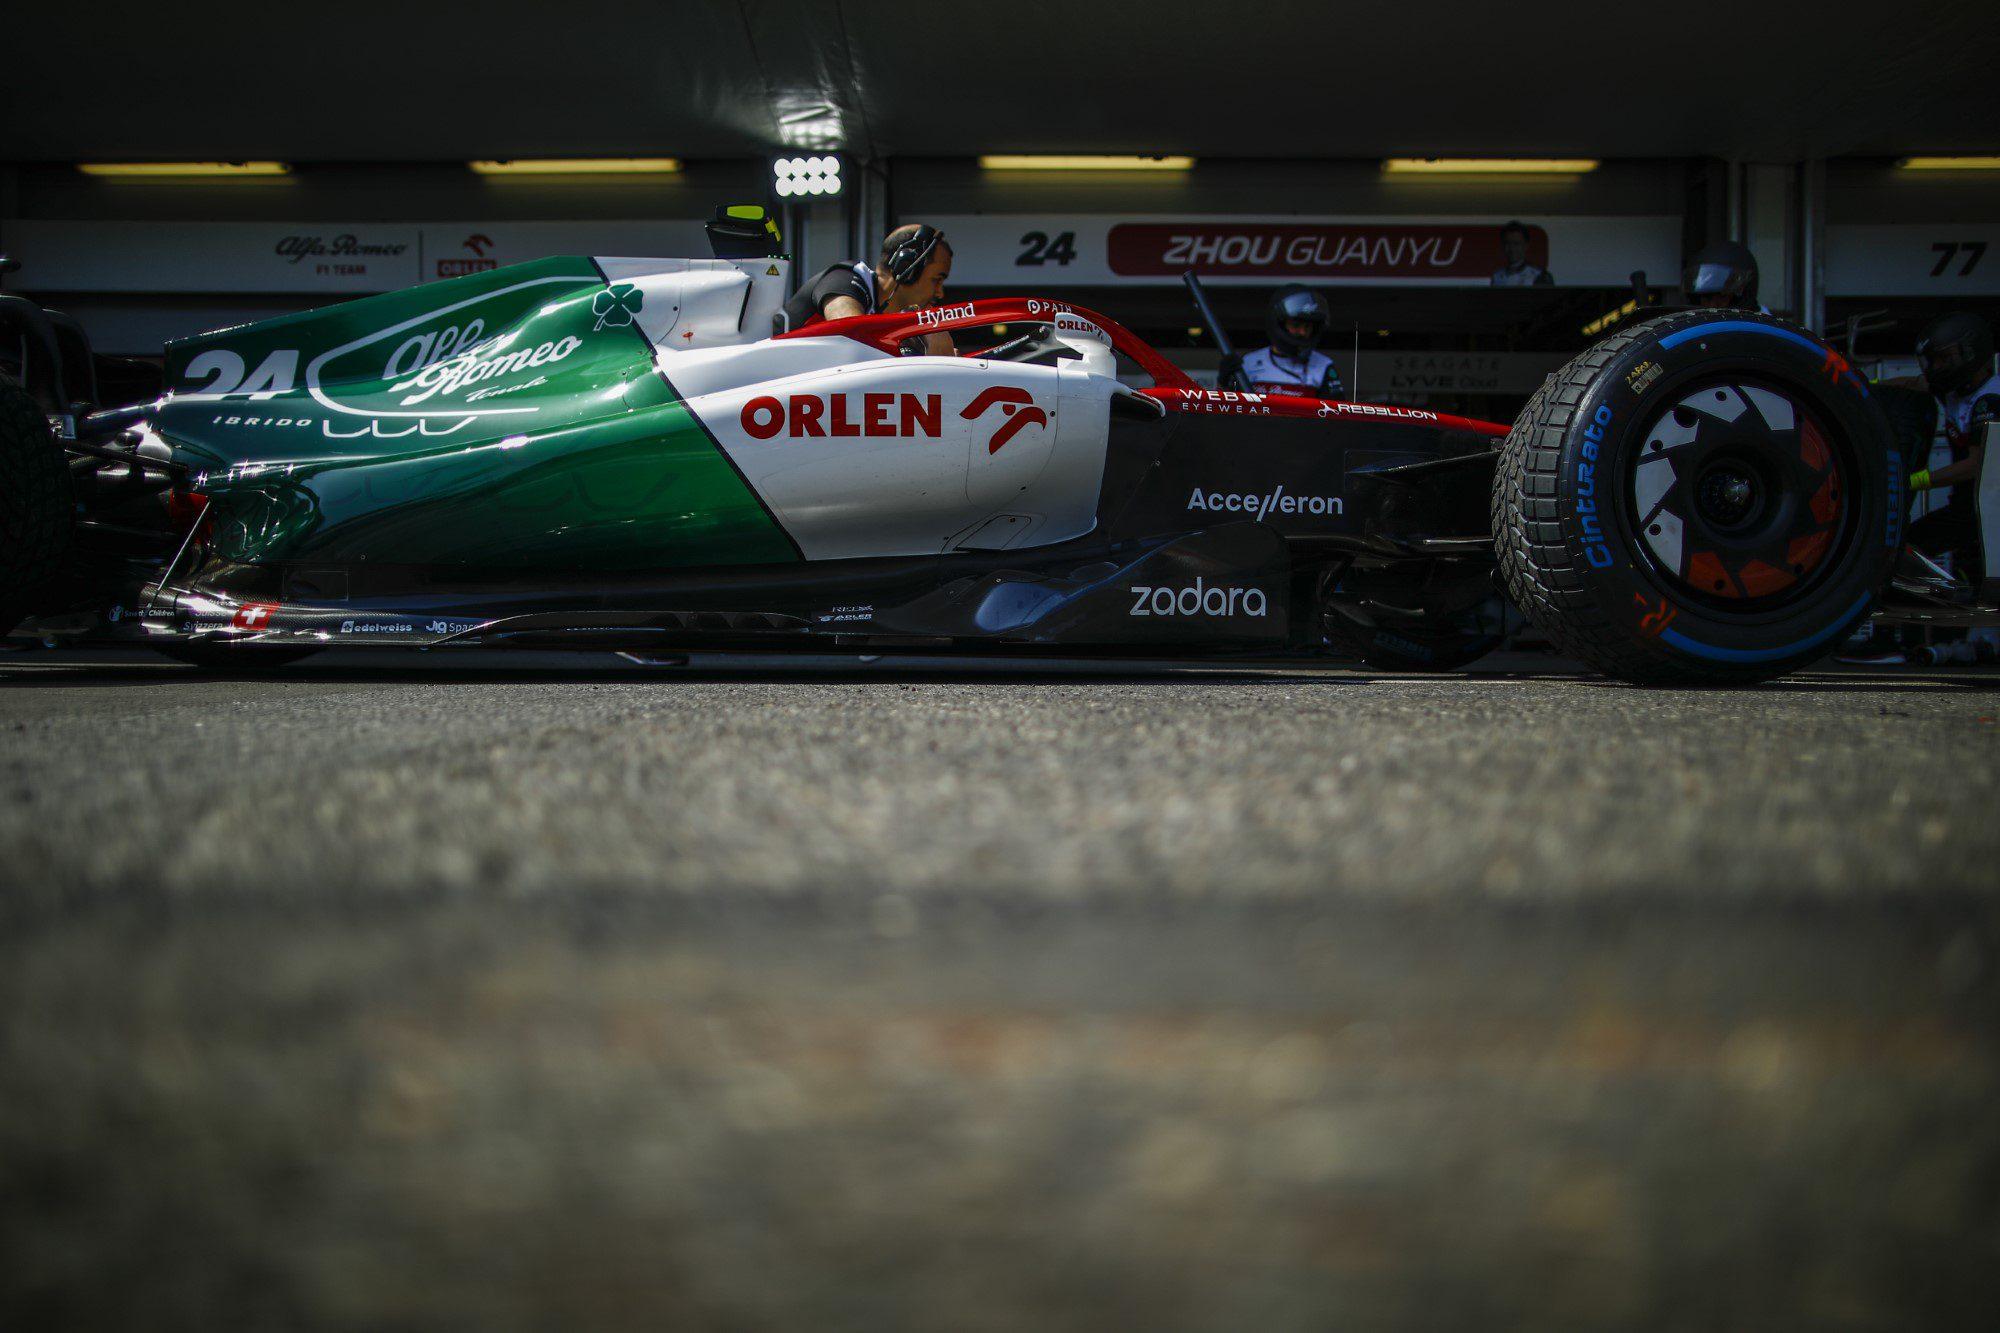 F1: Alfa Romeo revela carro da temporada de 2023